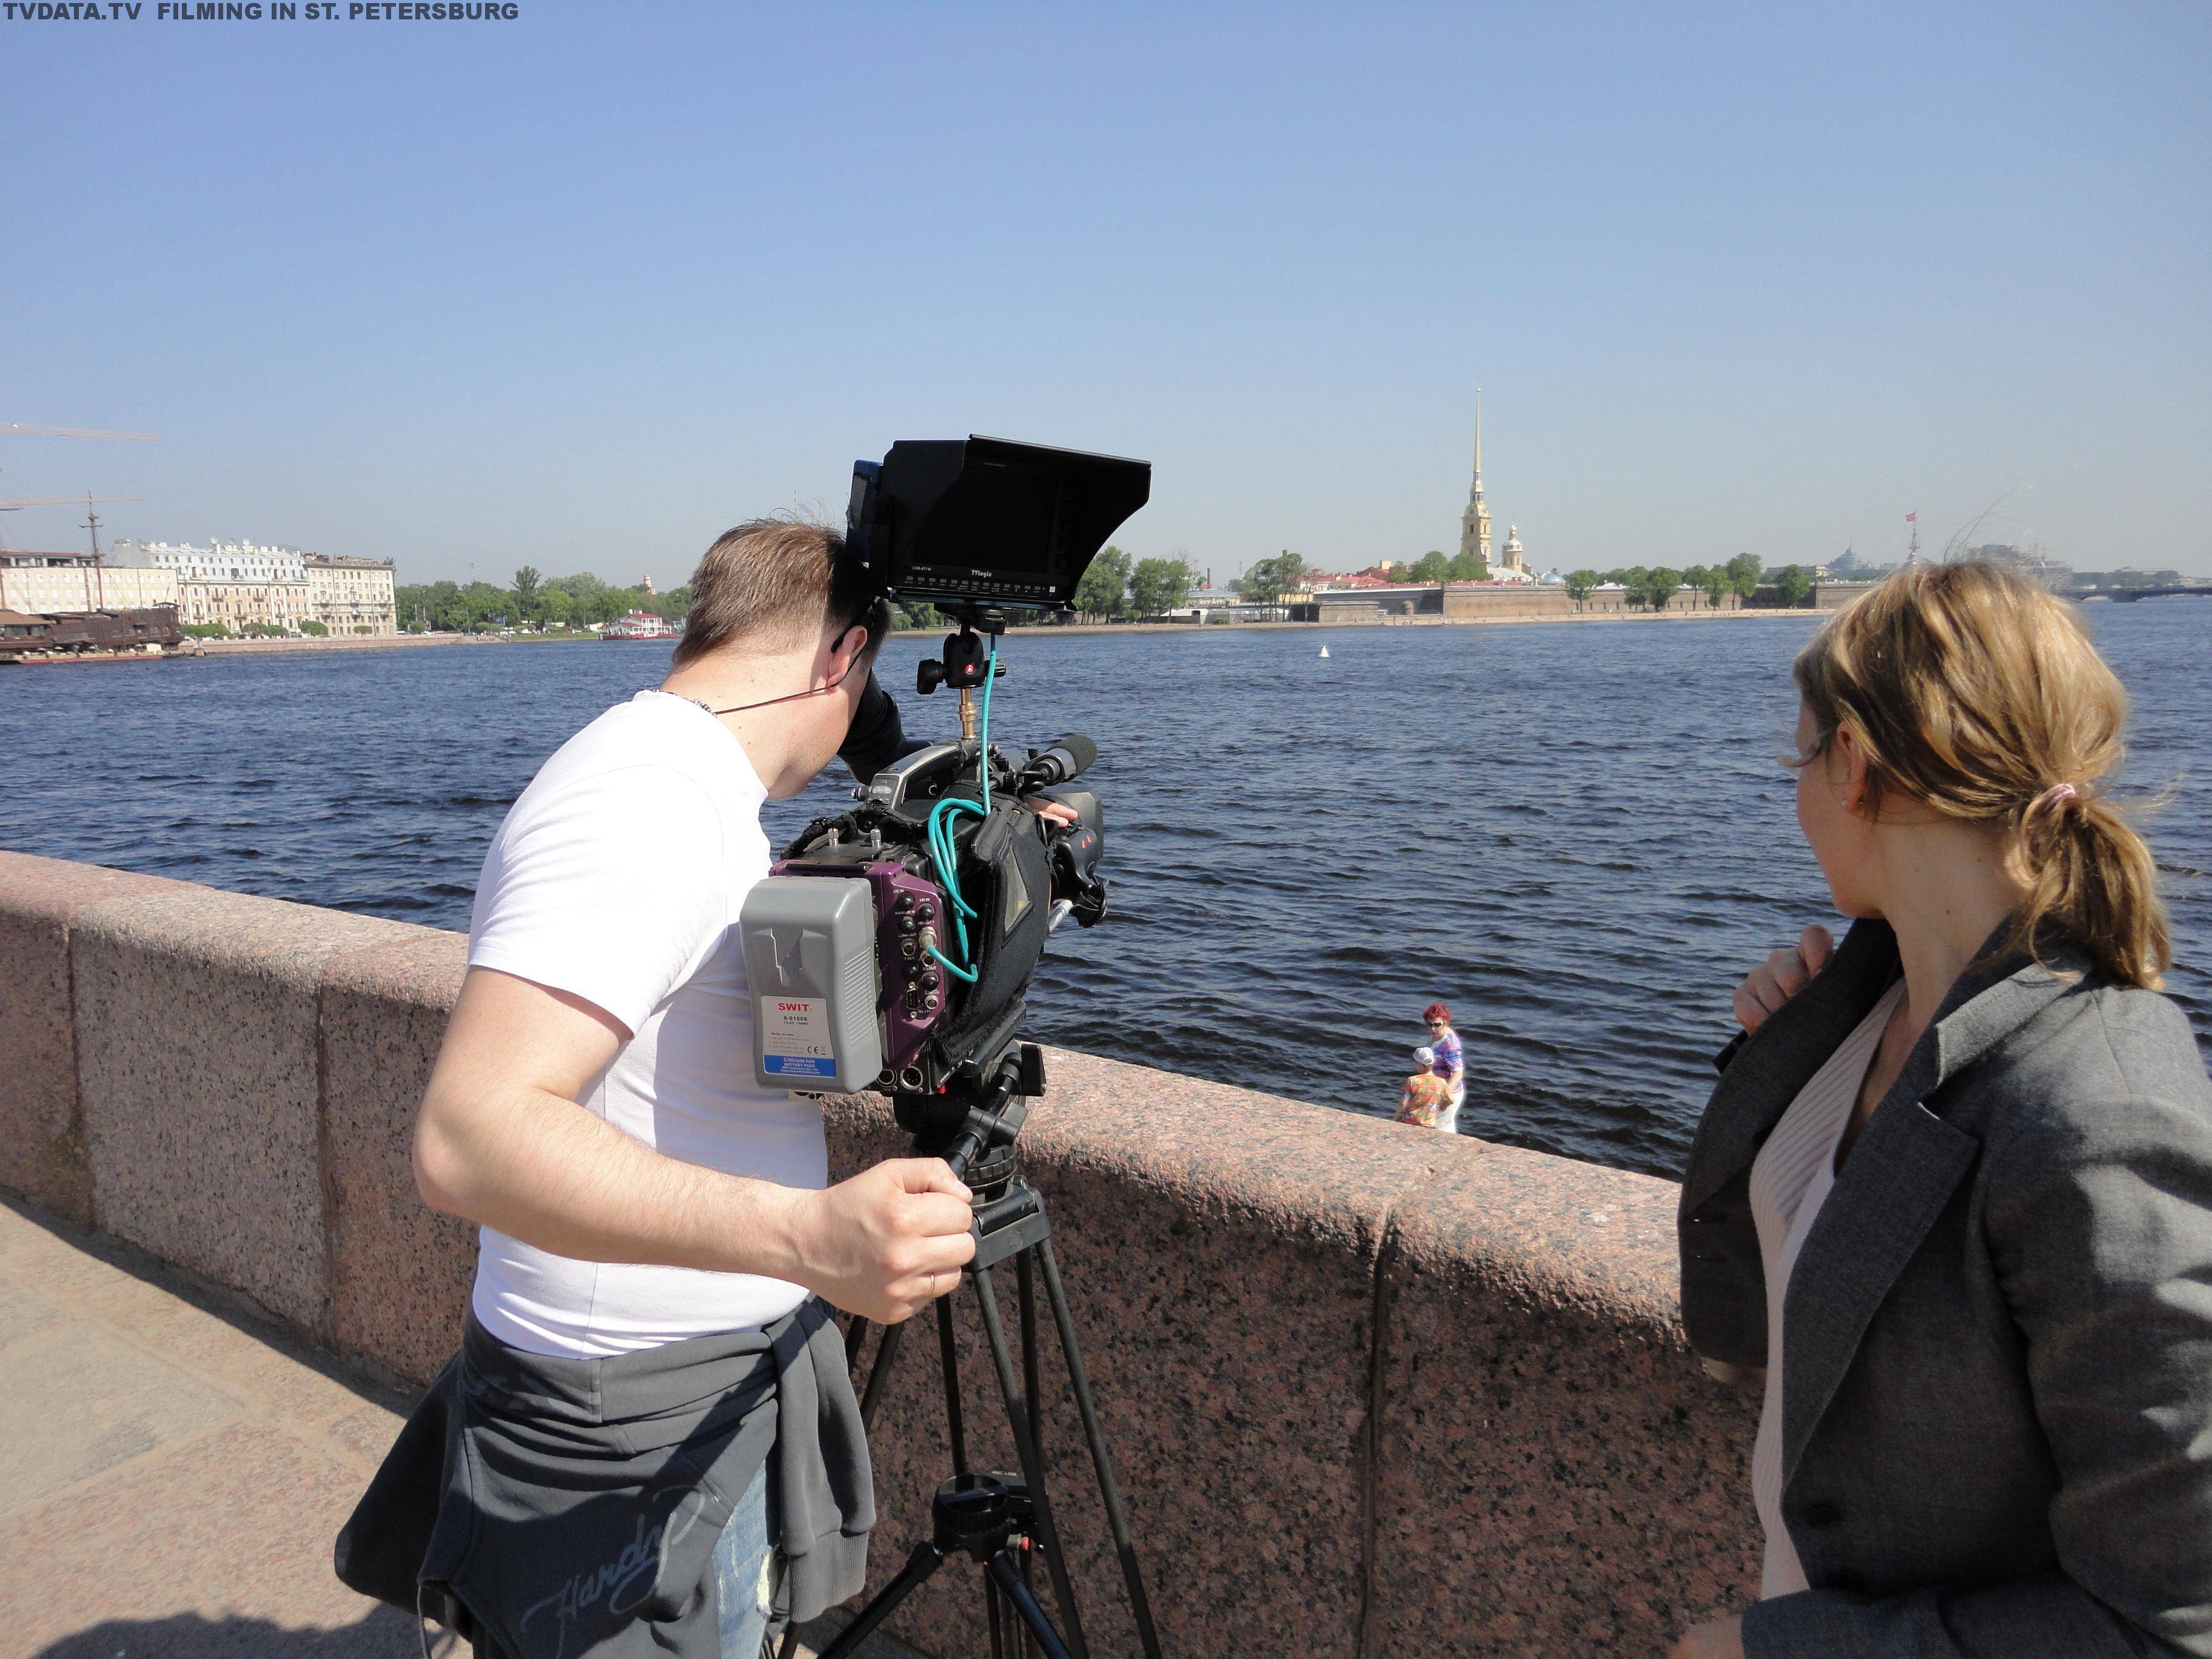 FILMING IN RUSSIA - ST. PETERSBURG